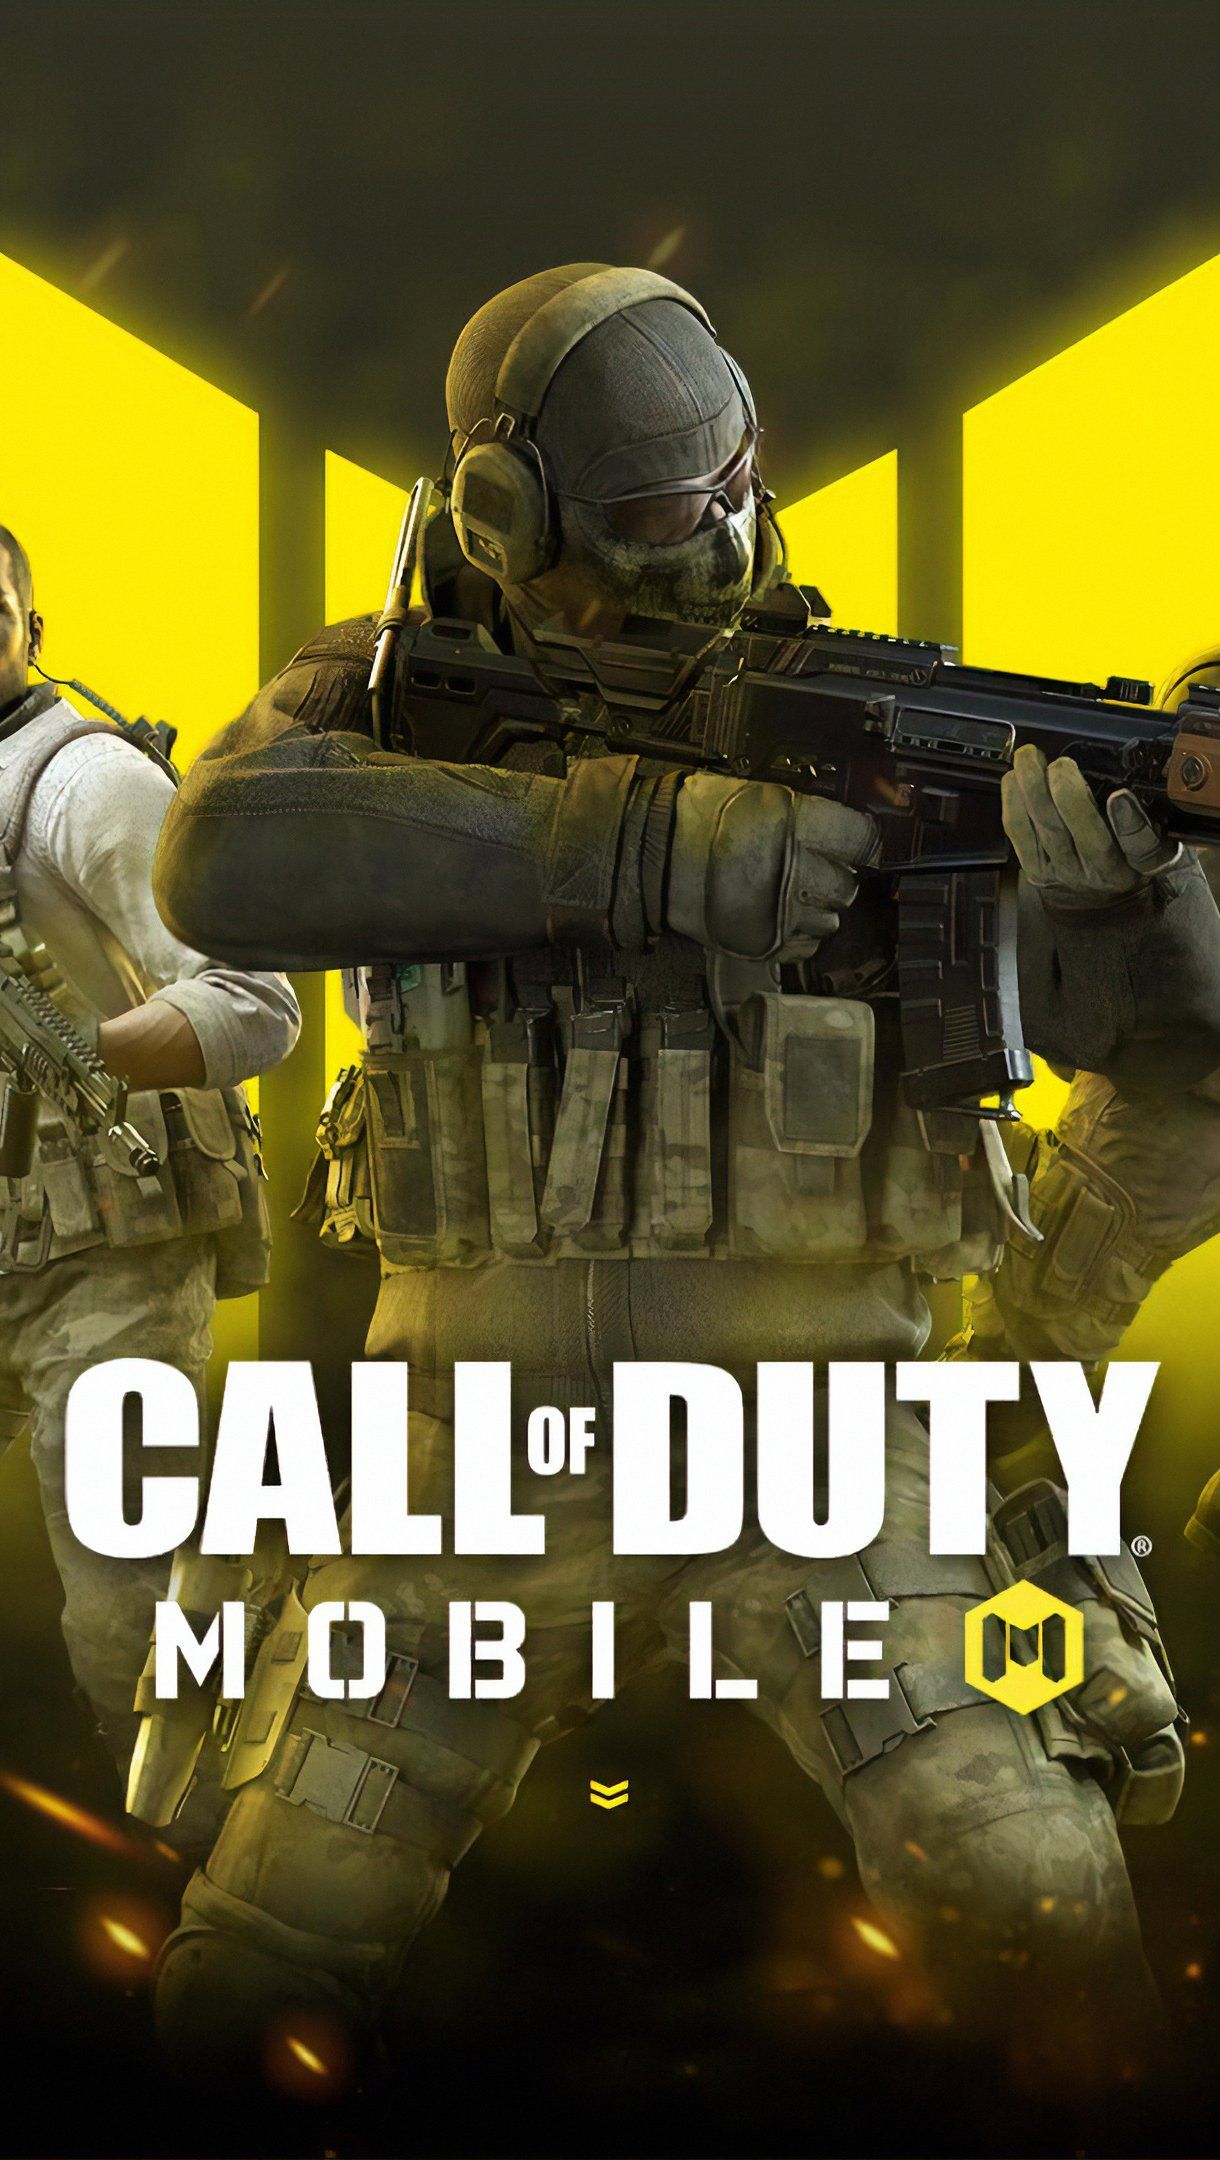 Call of Duty Mobile Poster Wallpaper 4k .xtrafondos.com